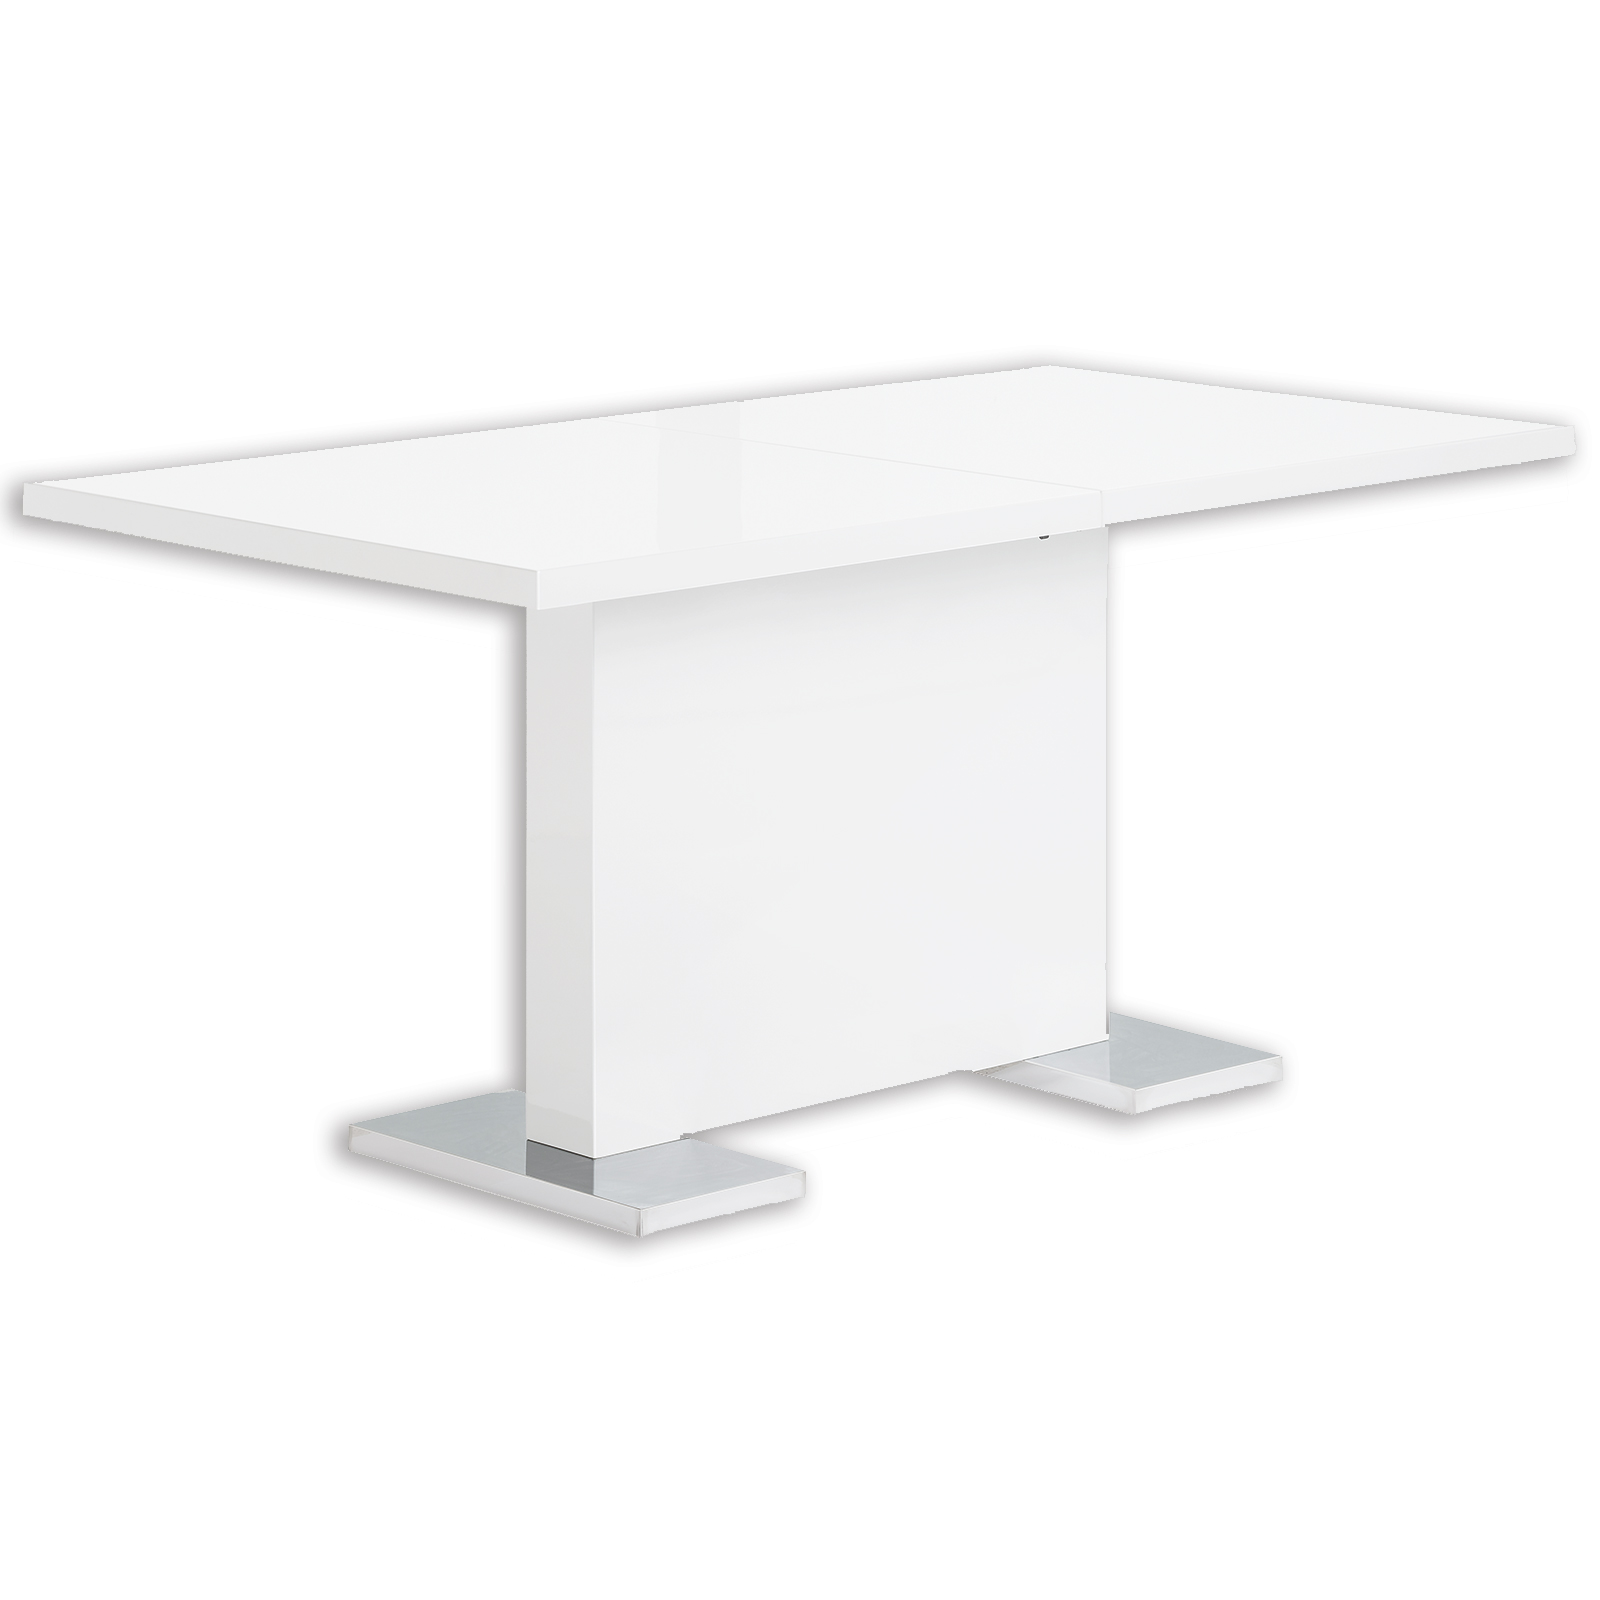 Tisch - weiß Hochglanz - ausziehbar - 120x80 cm | Online ...